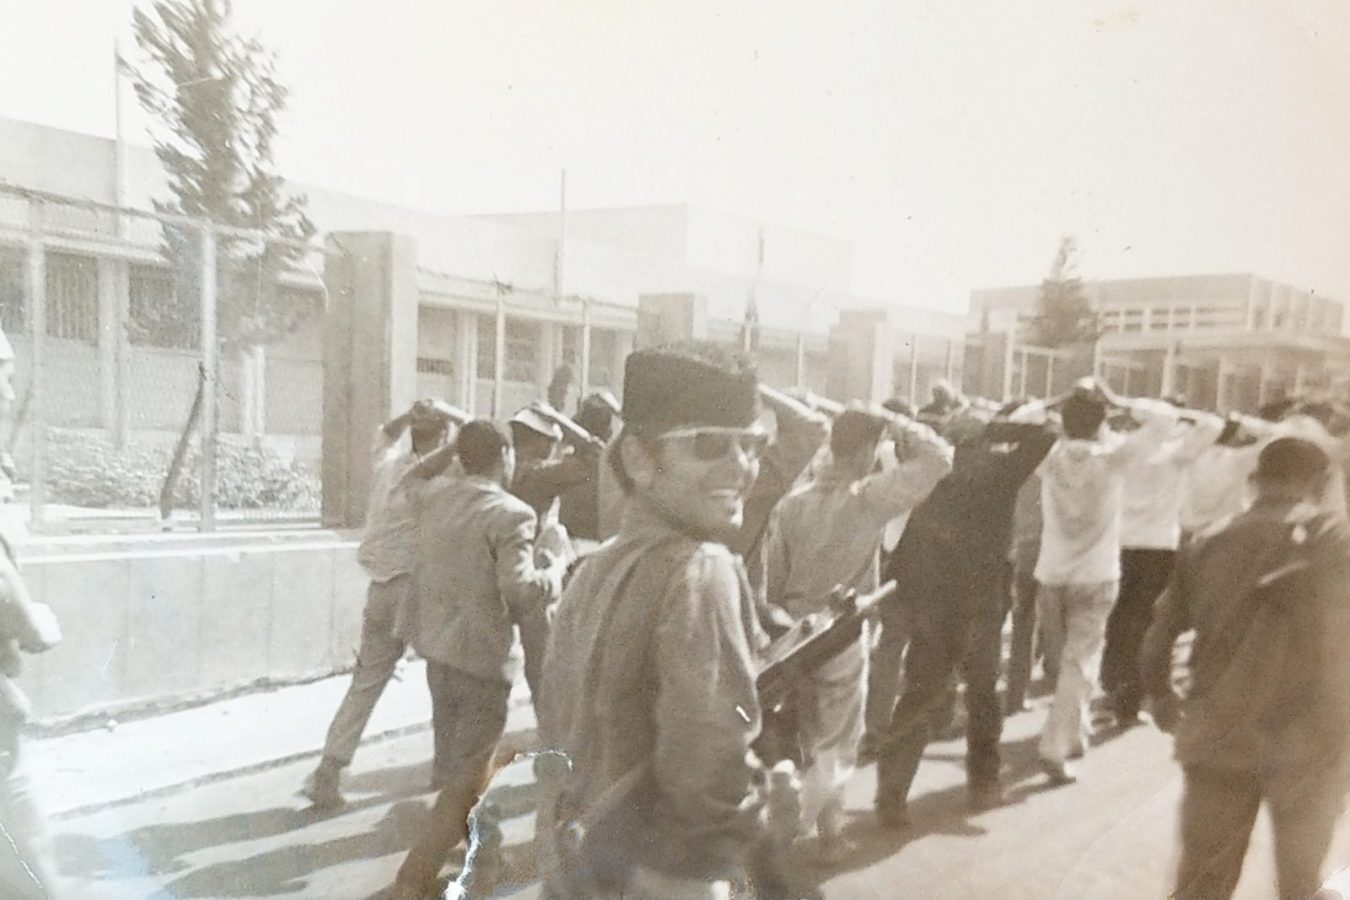 יוני 1967 - ליווי שבויים מצריים אל מעבר לתעלה (מלחמת ששת הימים)